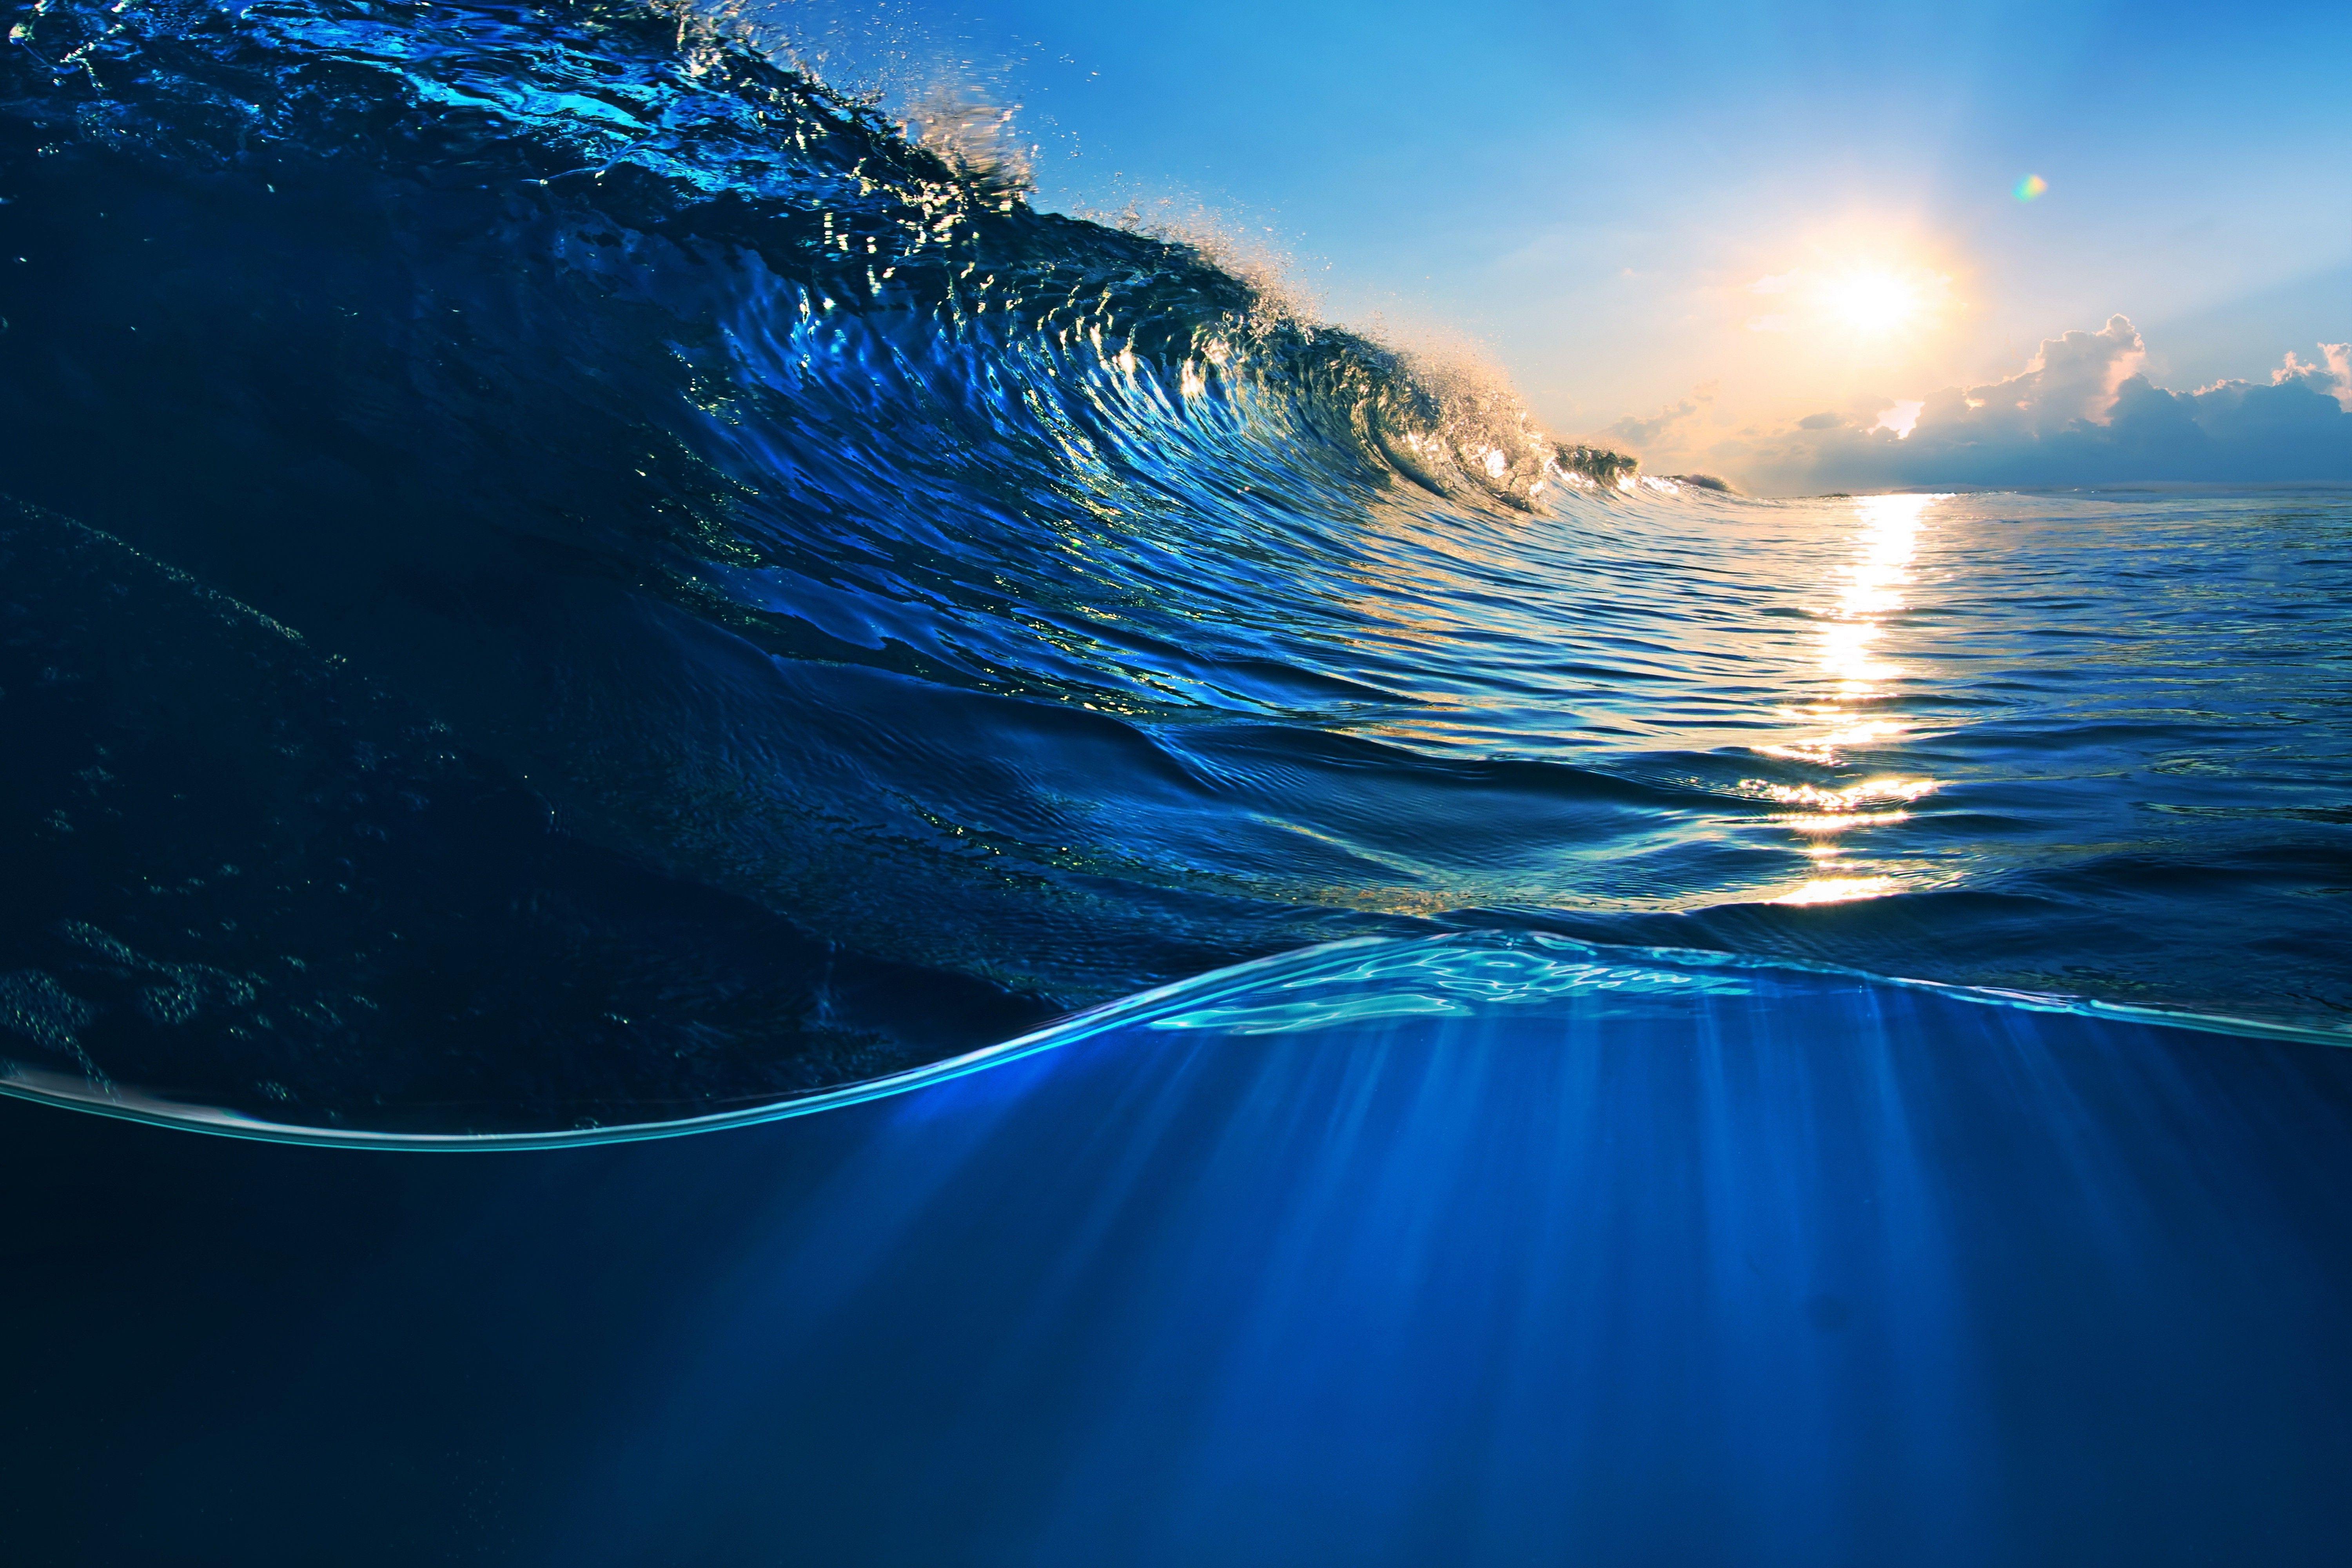 Blue Ocean Waves HD Wallpapers - Top Free Blue Ocean Waves HD ...